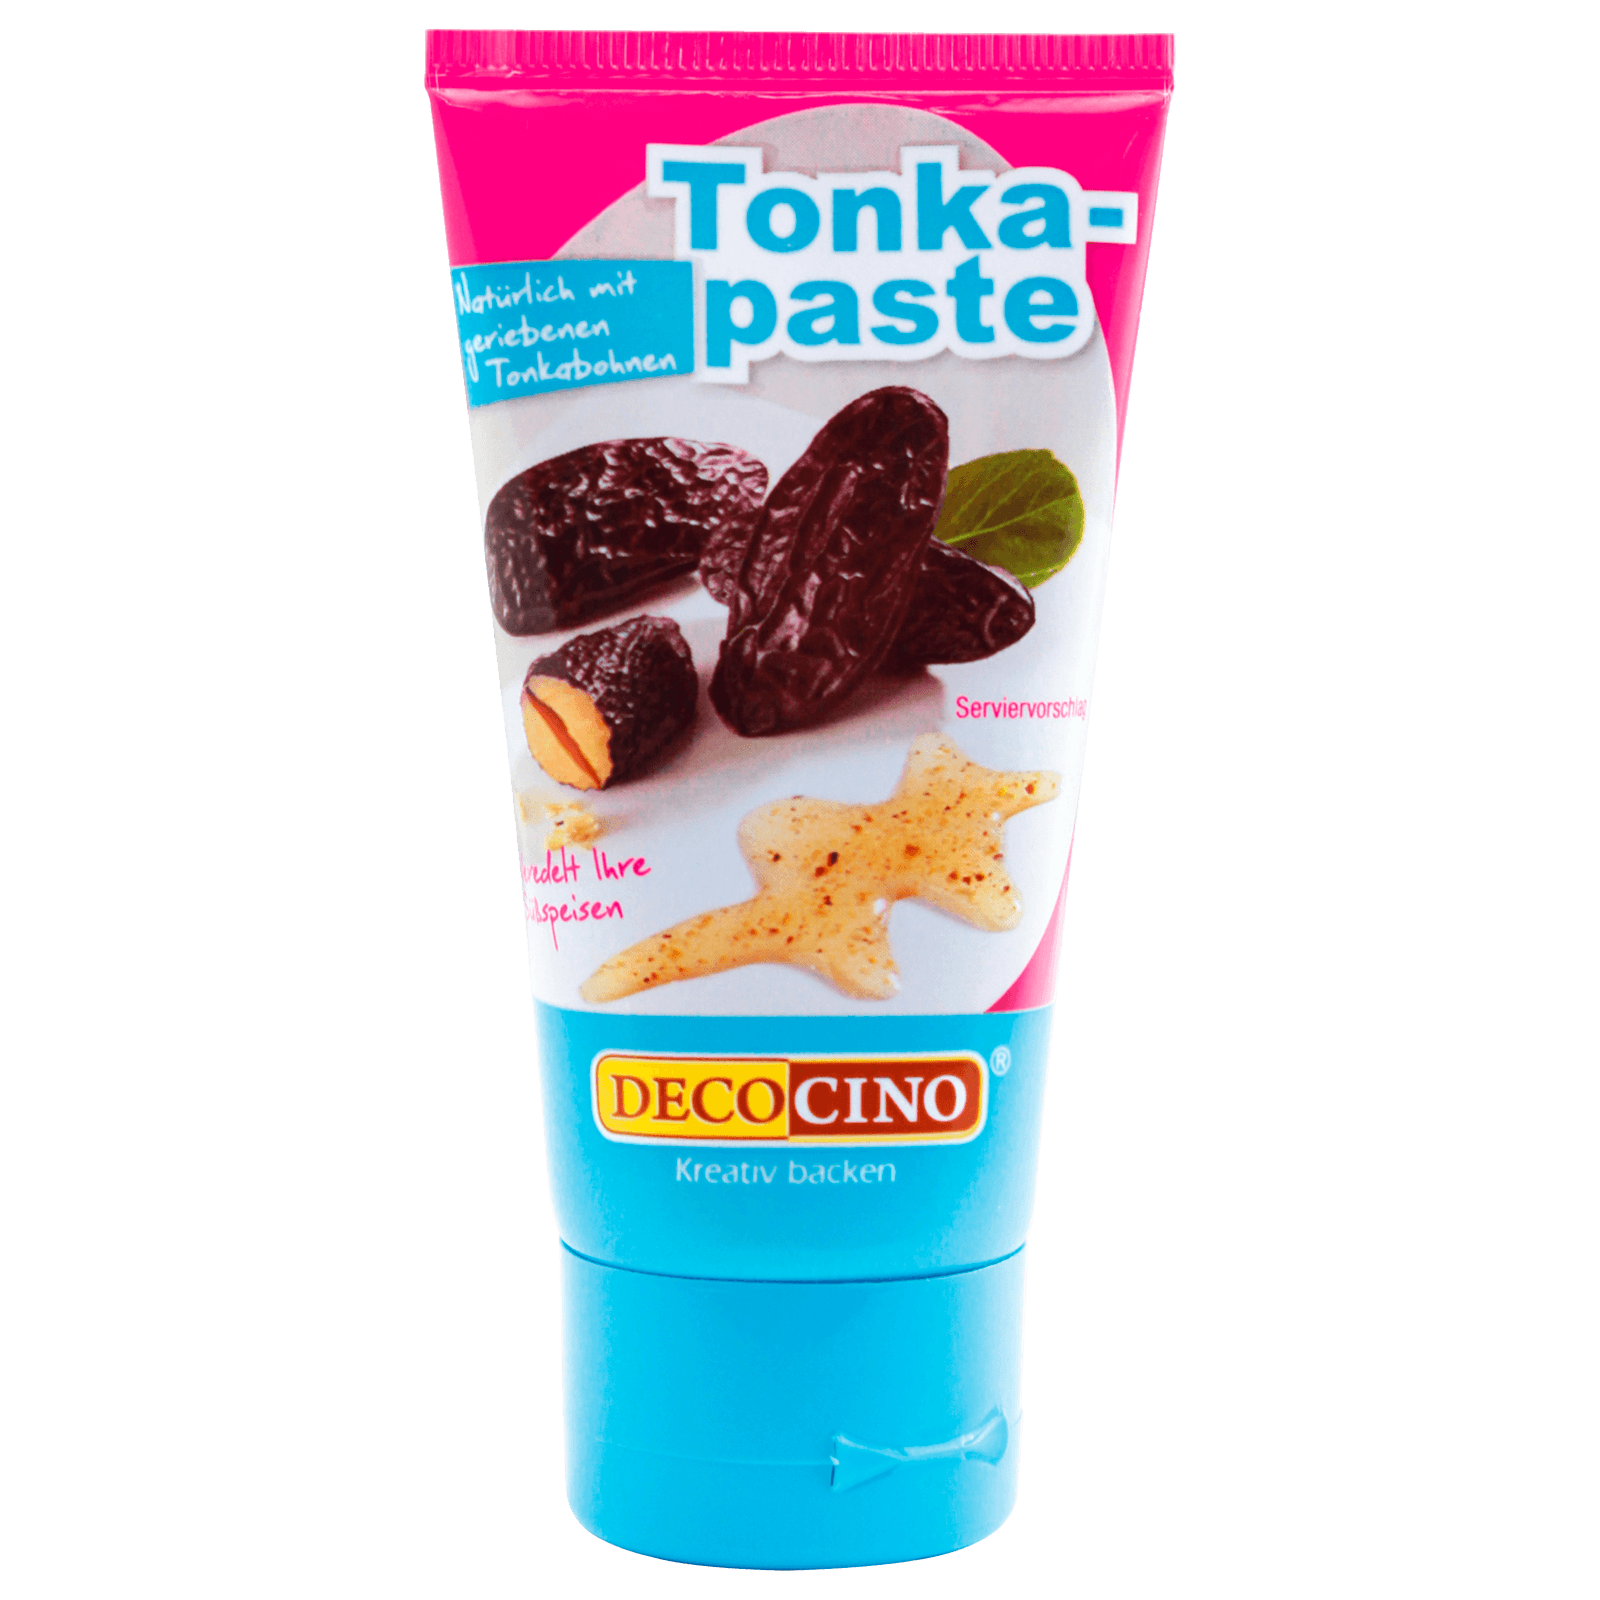 Decocino Tonka-Paste 50g bei REWE online bestellen!